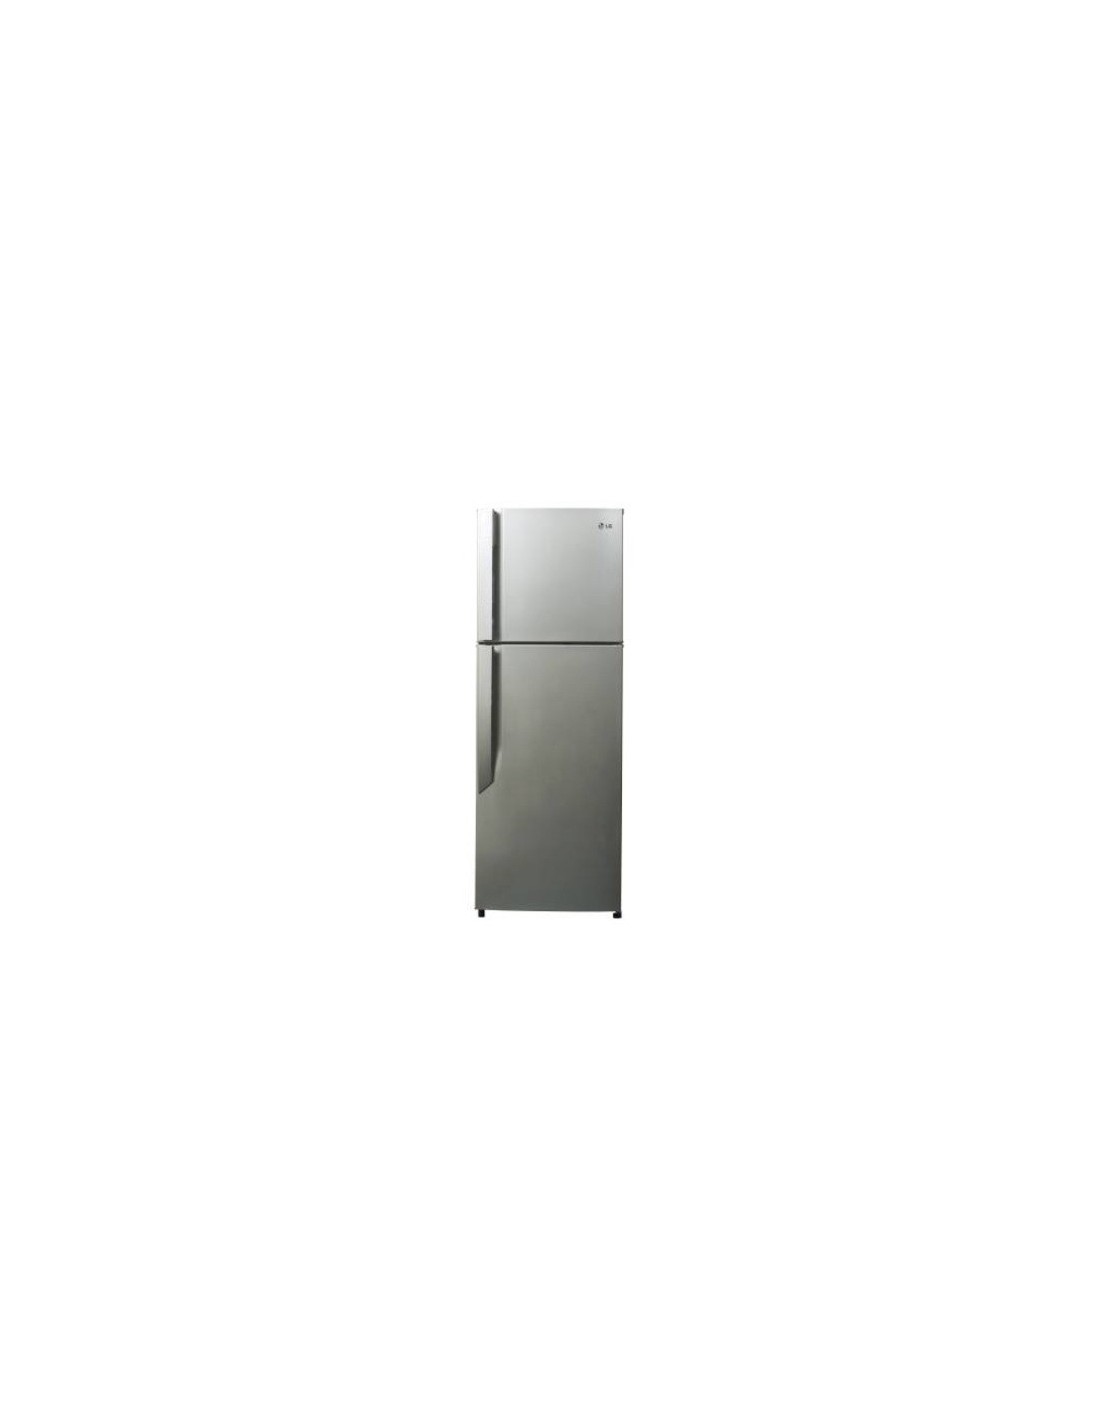 Холодильник 650. Холодильник LG GN-v292 RLCS. Холодильник LG gr-v292 RLC. GN-v292rlcs. Холодильник LG GN-b422sqcb.